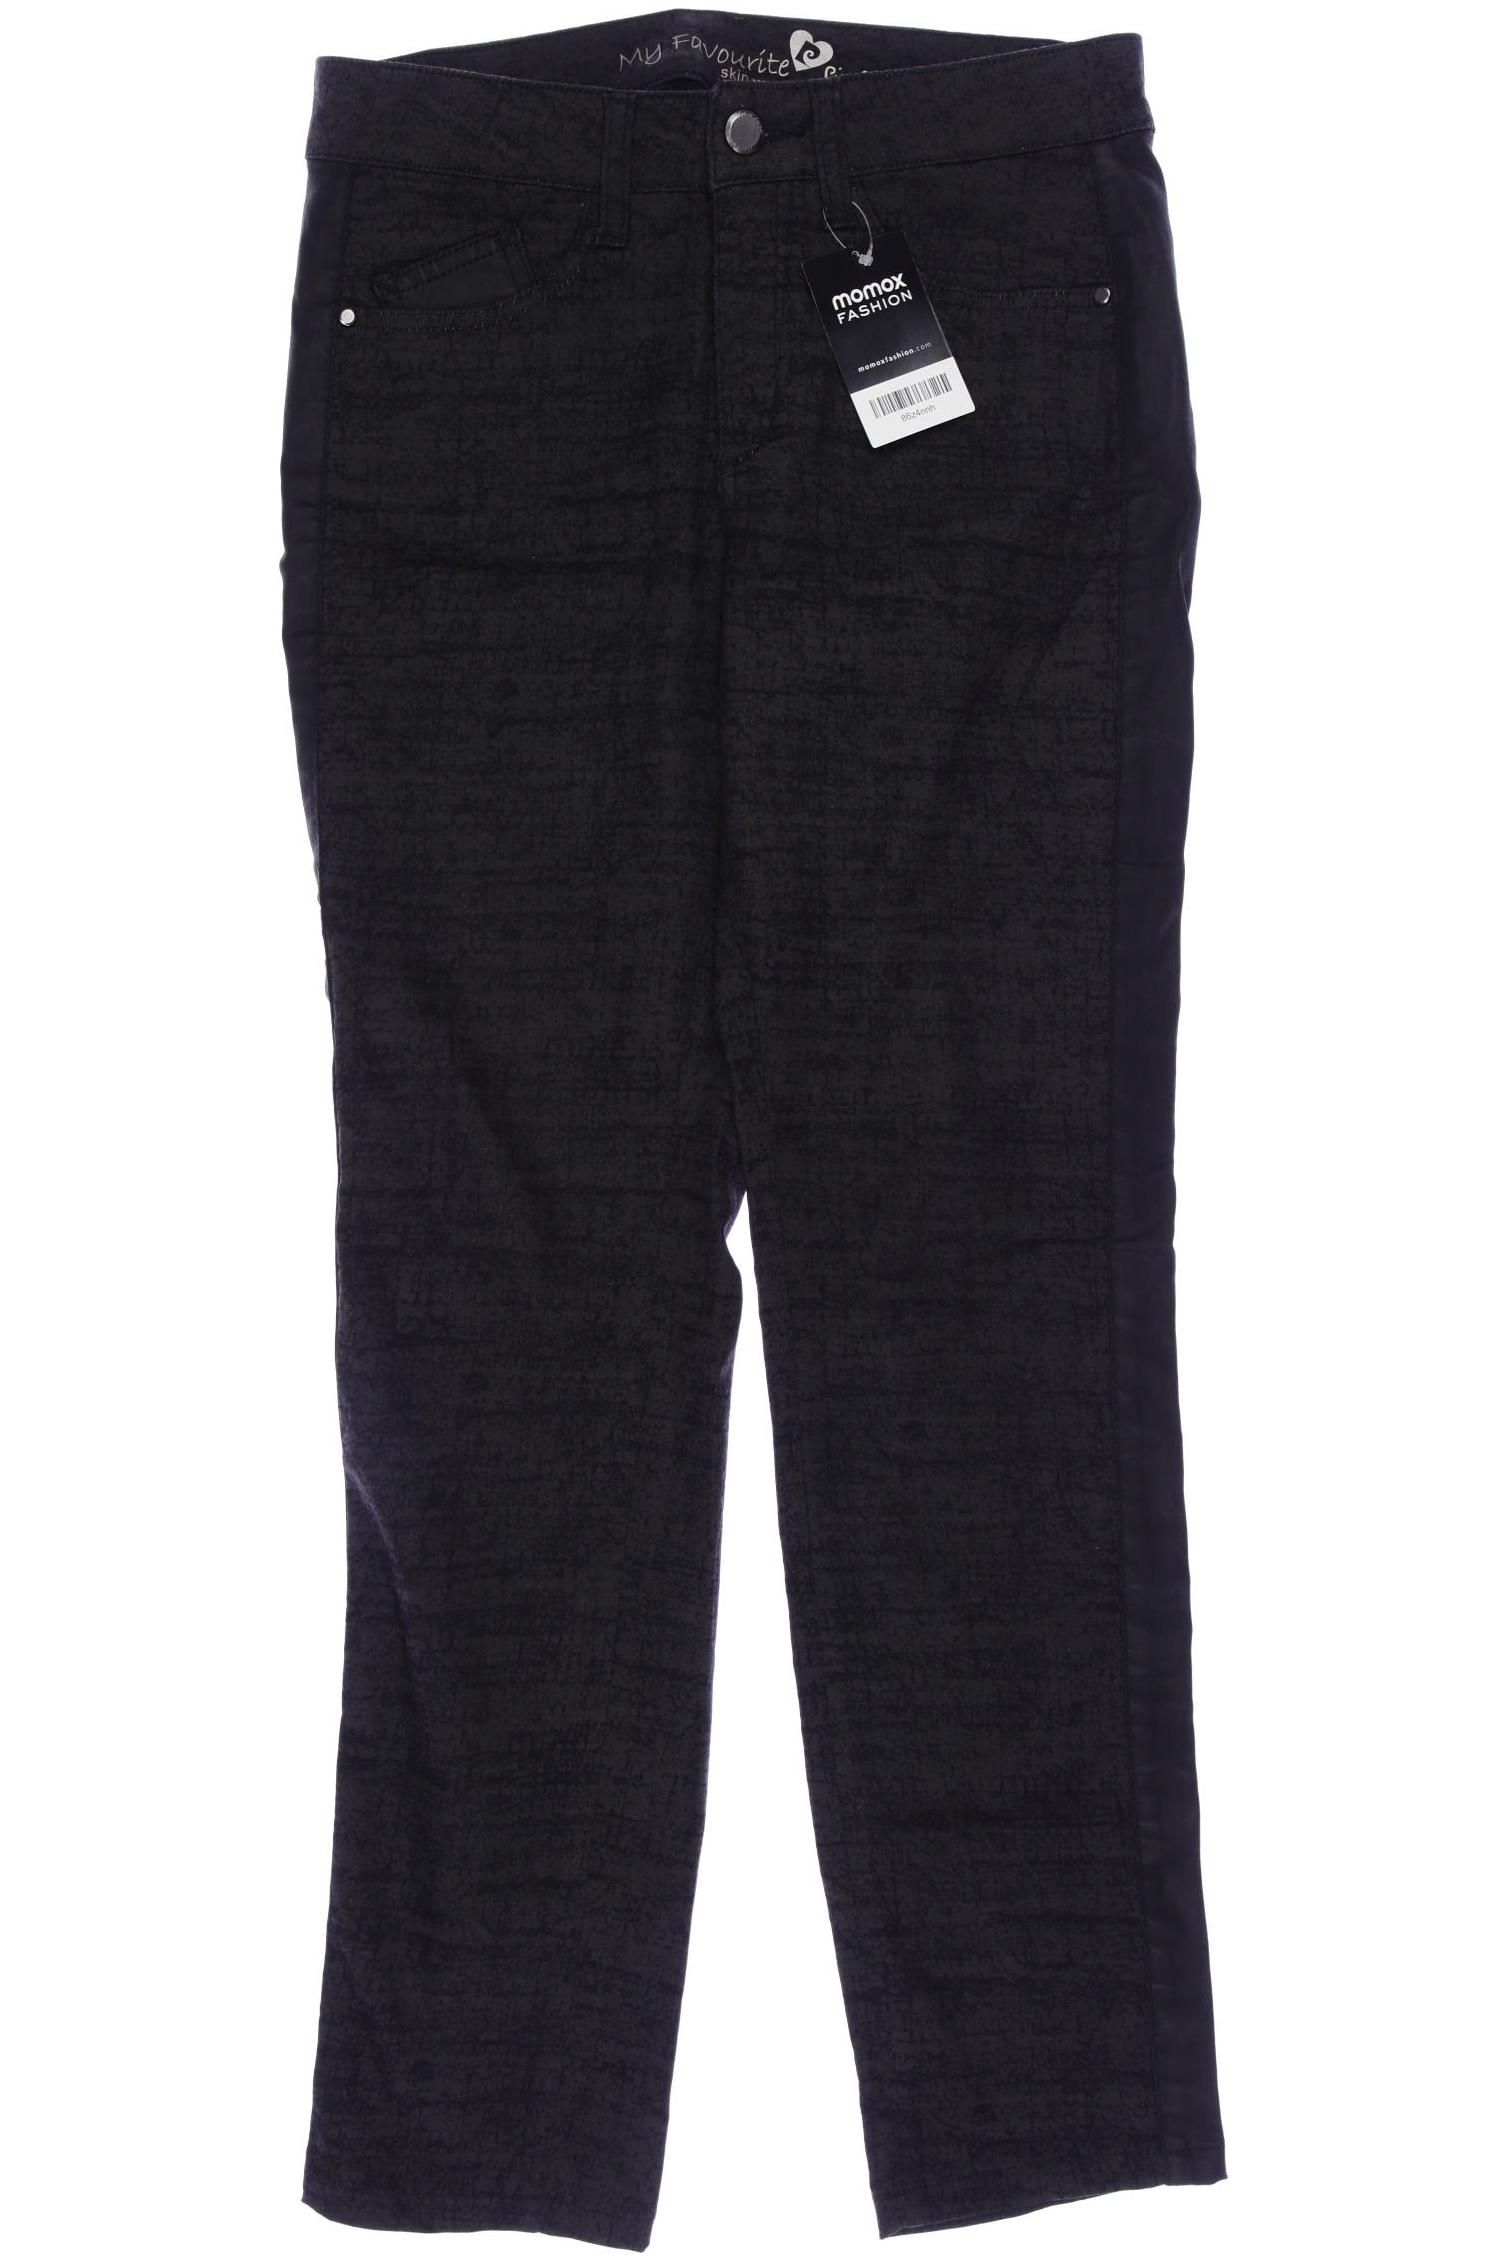 Pierre Cardin Damen Jeans, schwarz, Gr. 38 von Pierre Cardin